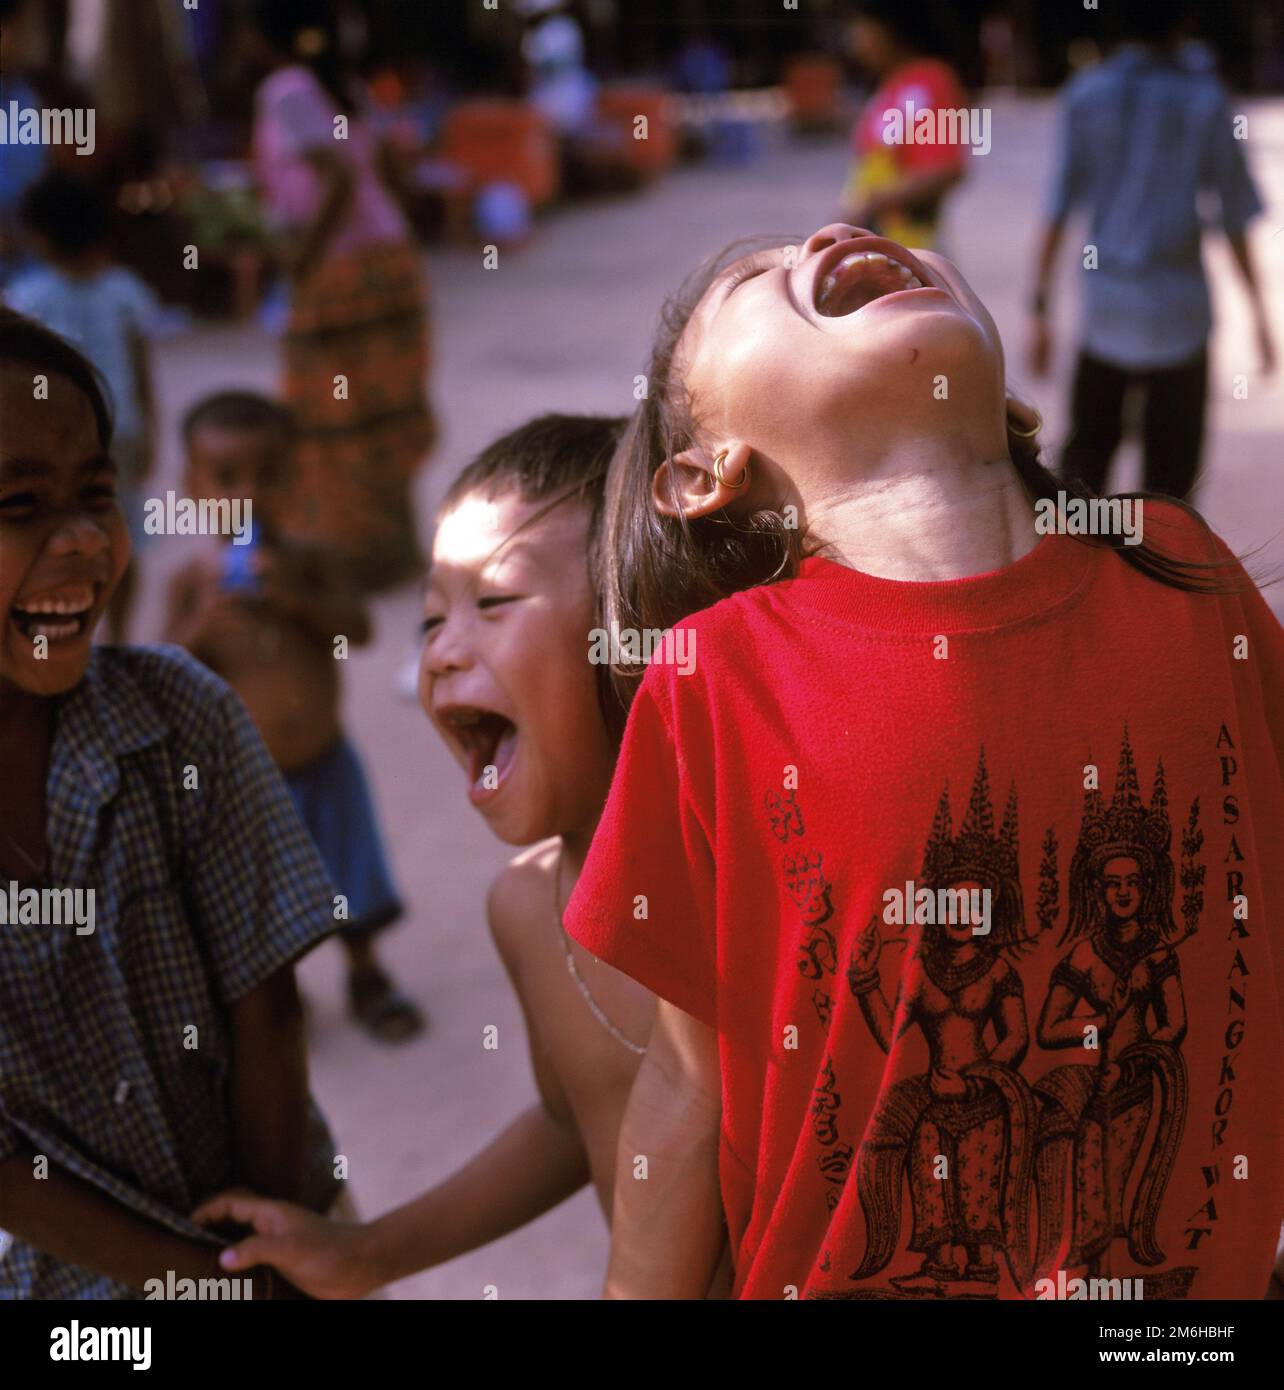 Les enfants rient près du temple Tah Prohm dans les temples d'Angkor. Capture d'image 2003. Date exacte inconnue. Banque D'Images